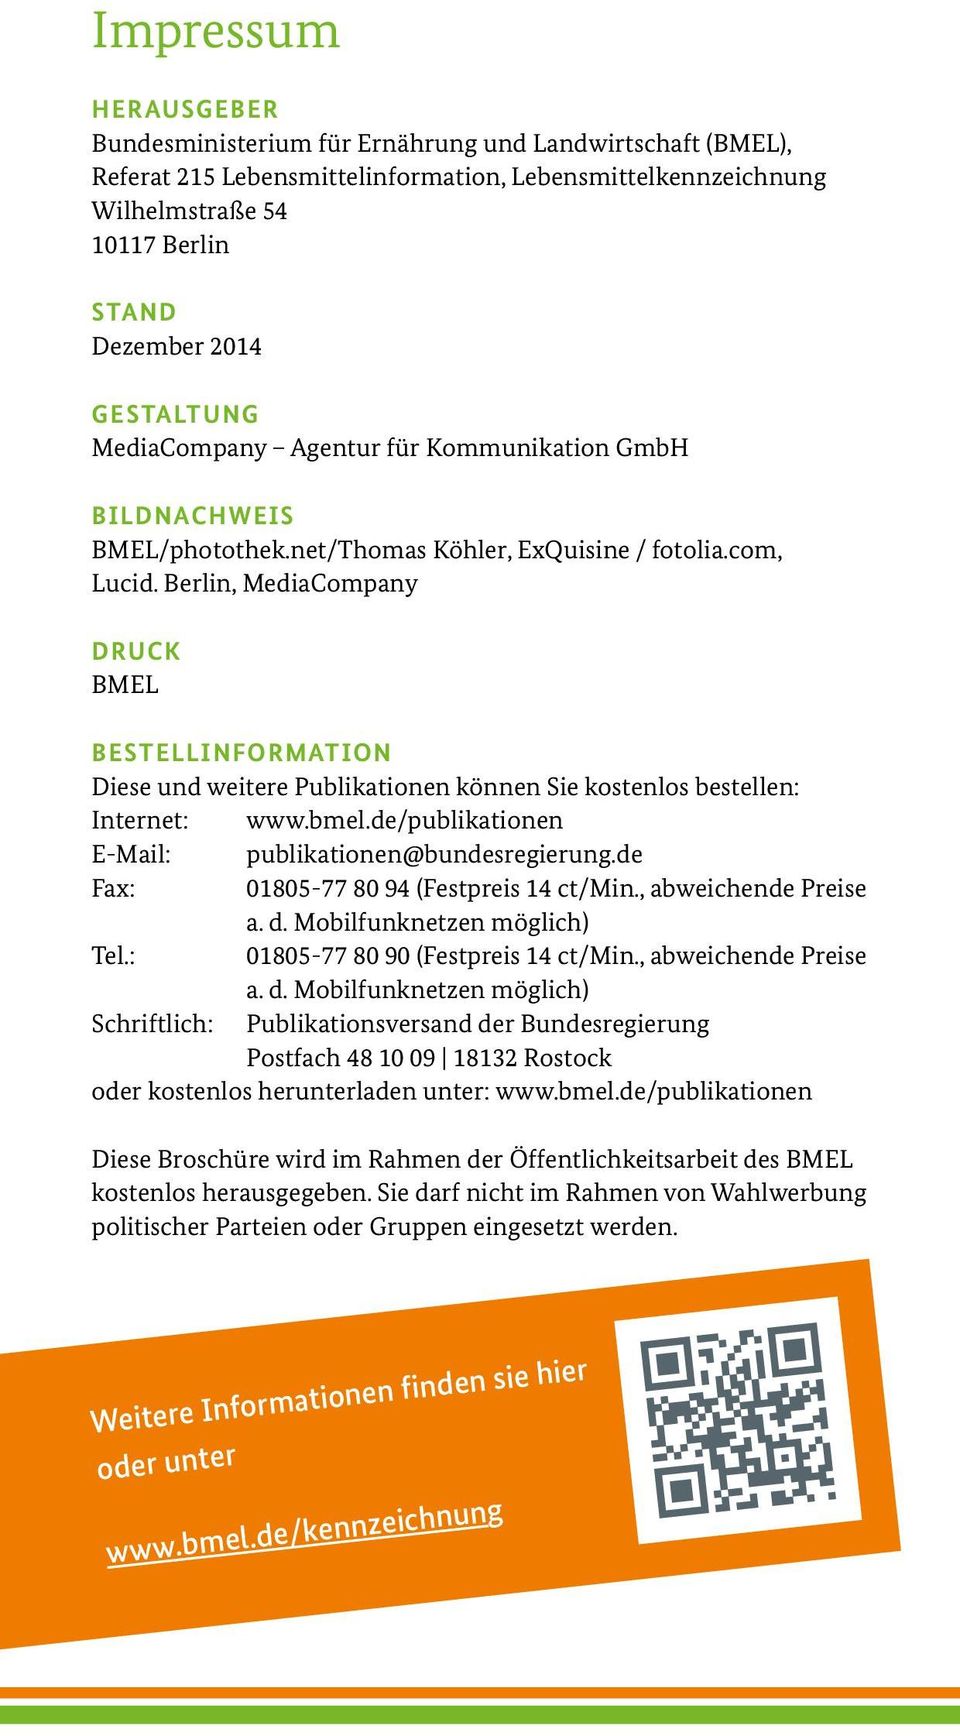 Berlin, MediaCompany DRUCK BMEL BESTELLINFORMATION Diese und weitere Publikationen können Sie kostenlos bestellen: Internet: www.bmel.de/publikationen E-Mail: publikationen@bundesregierung.